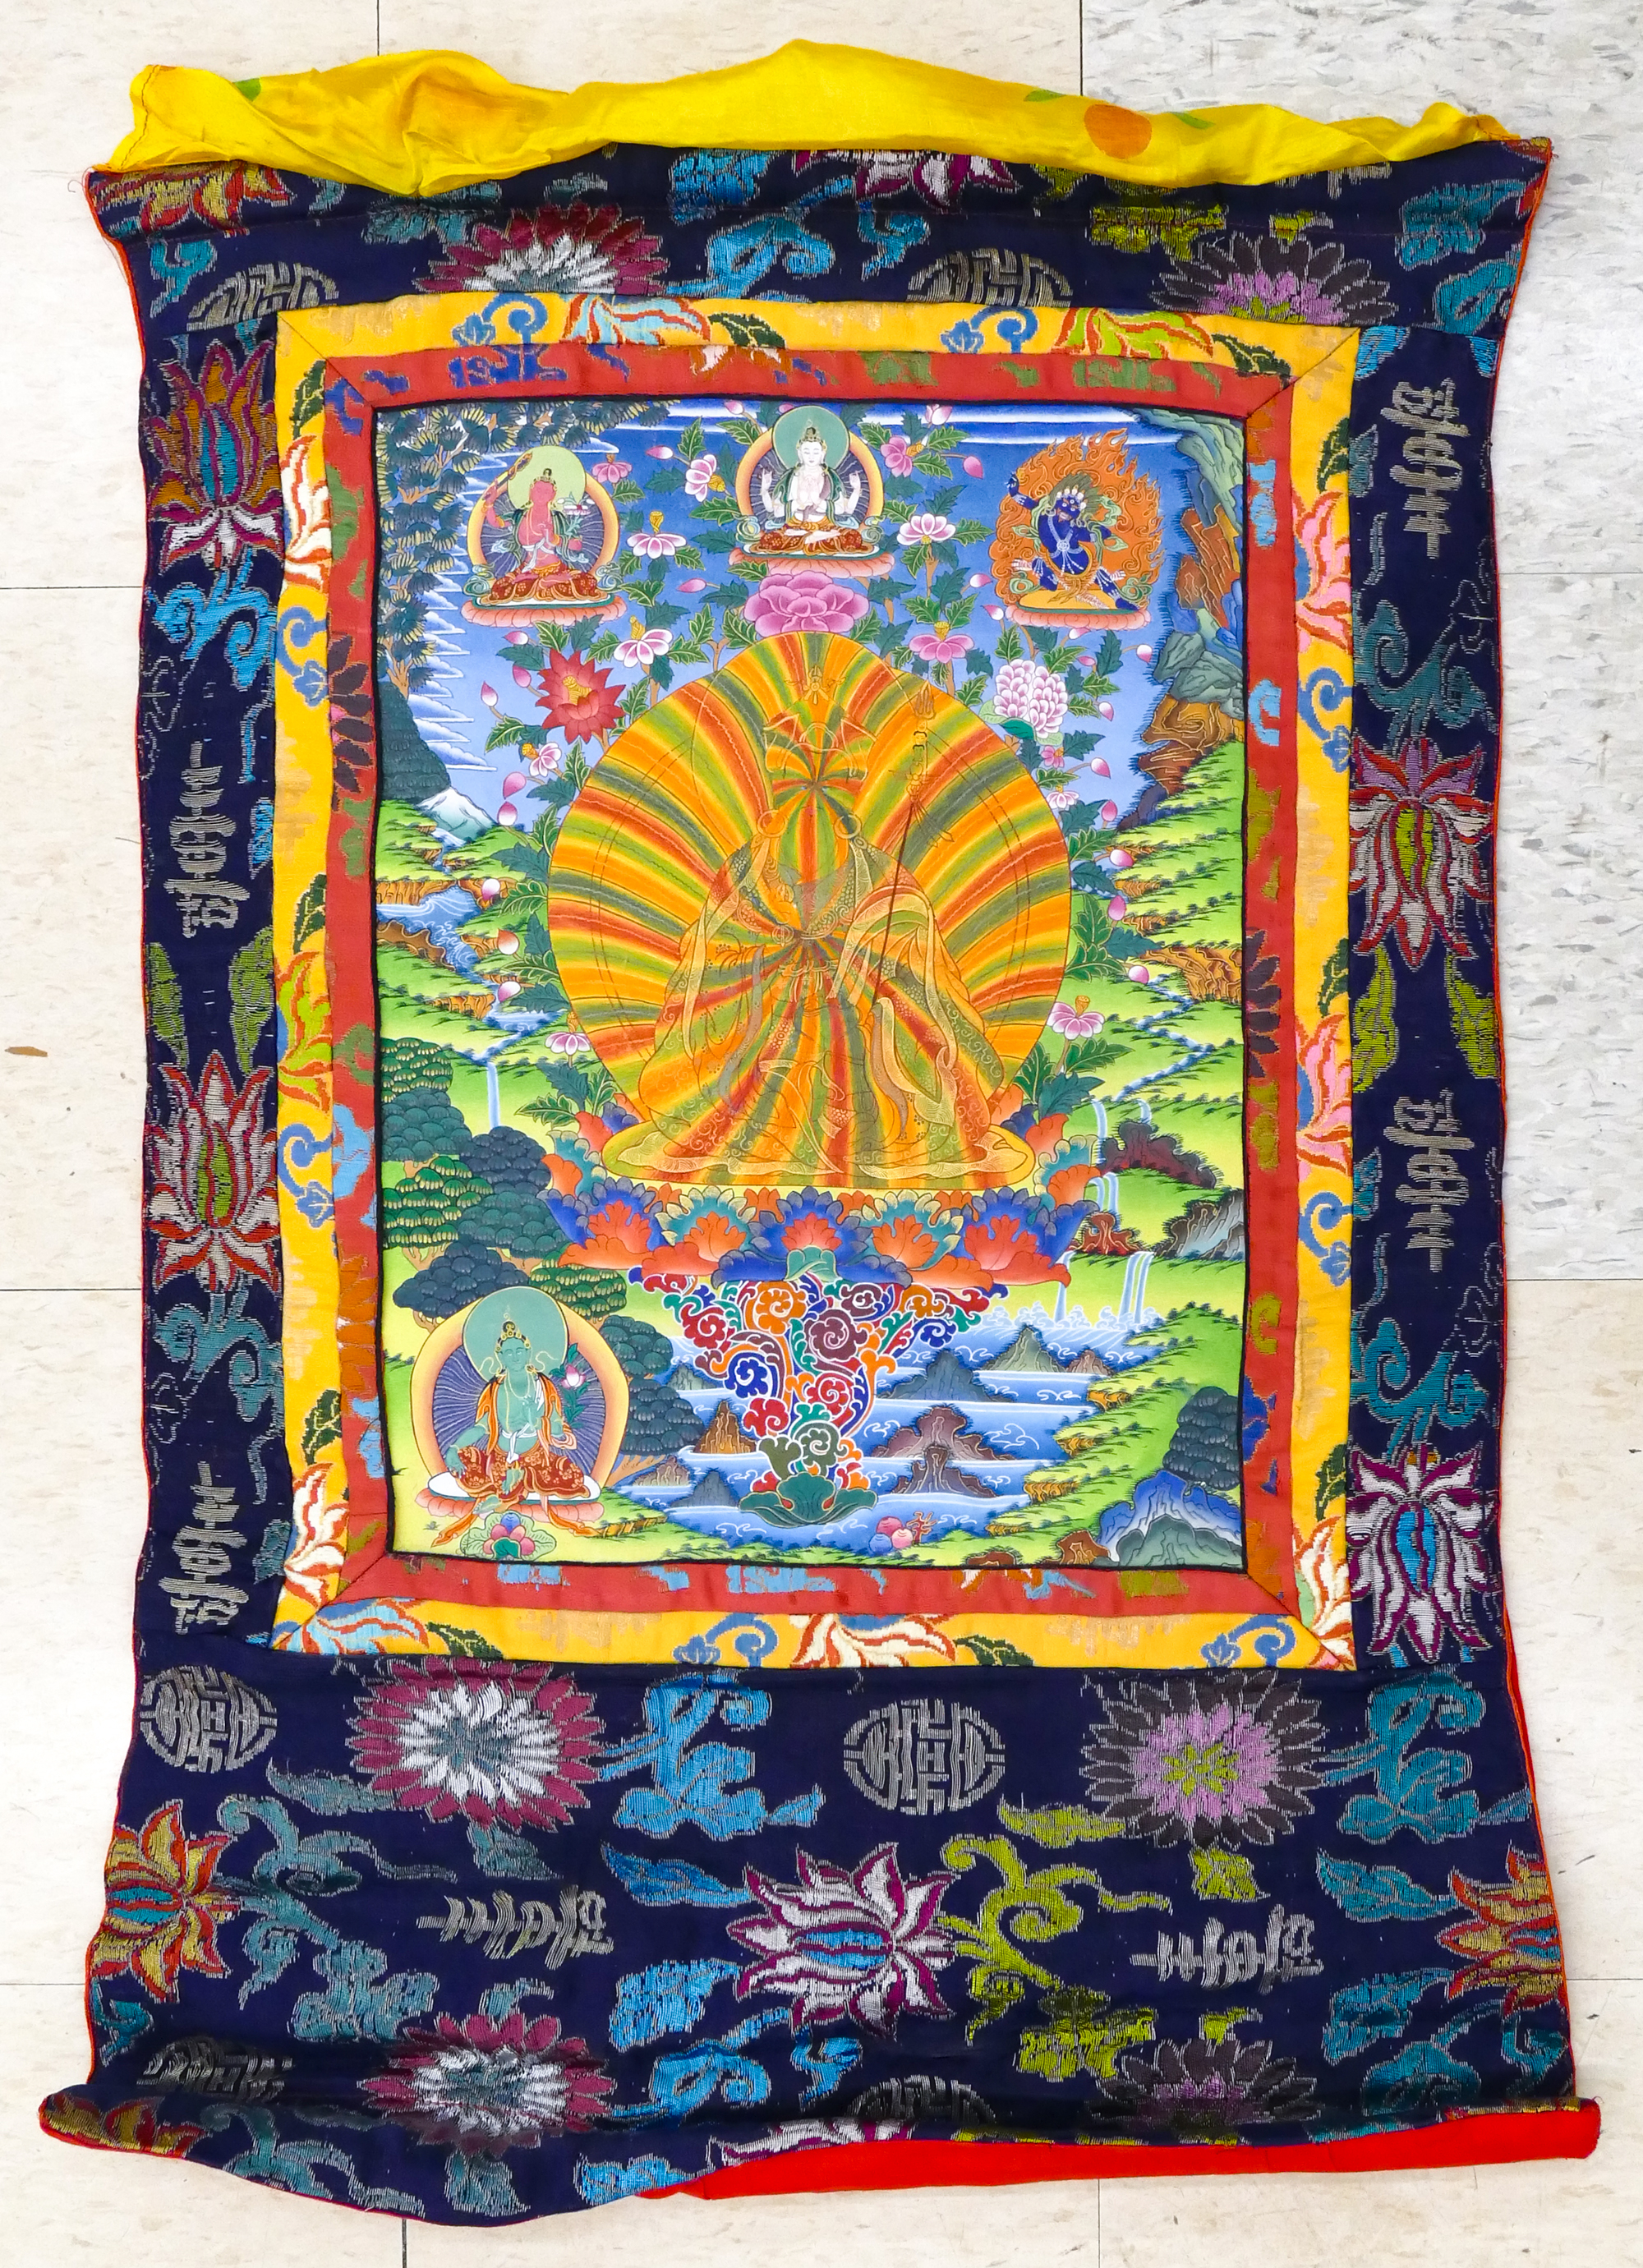 Tibetan Painted Padmasambhava Thangka 3cfbca